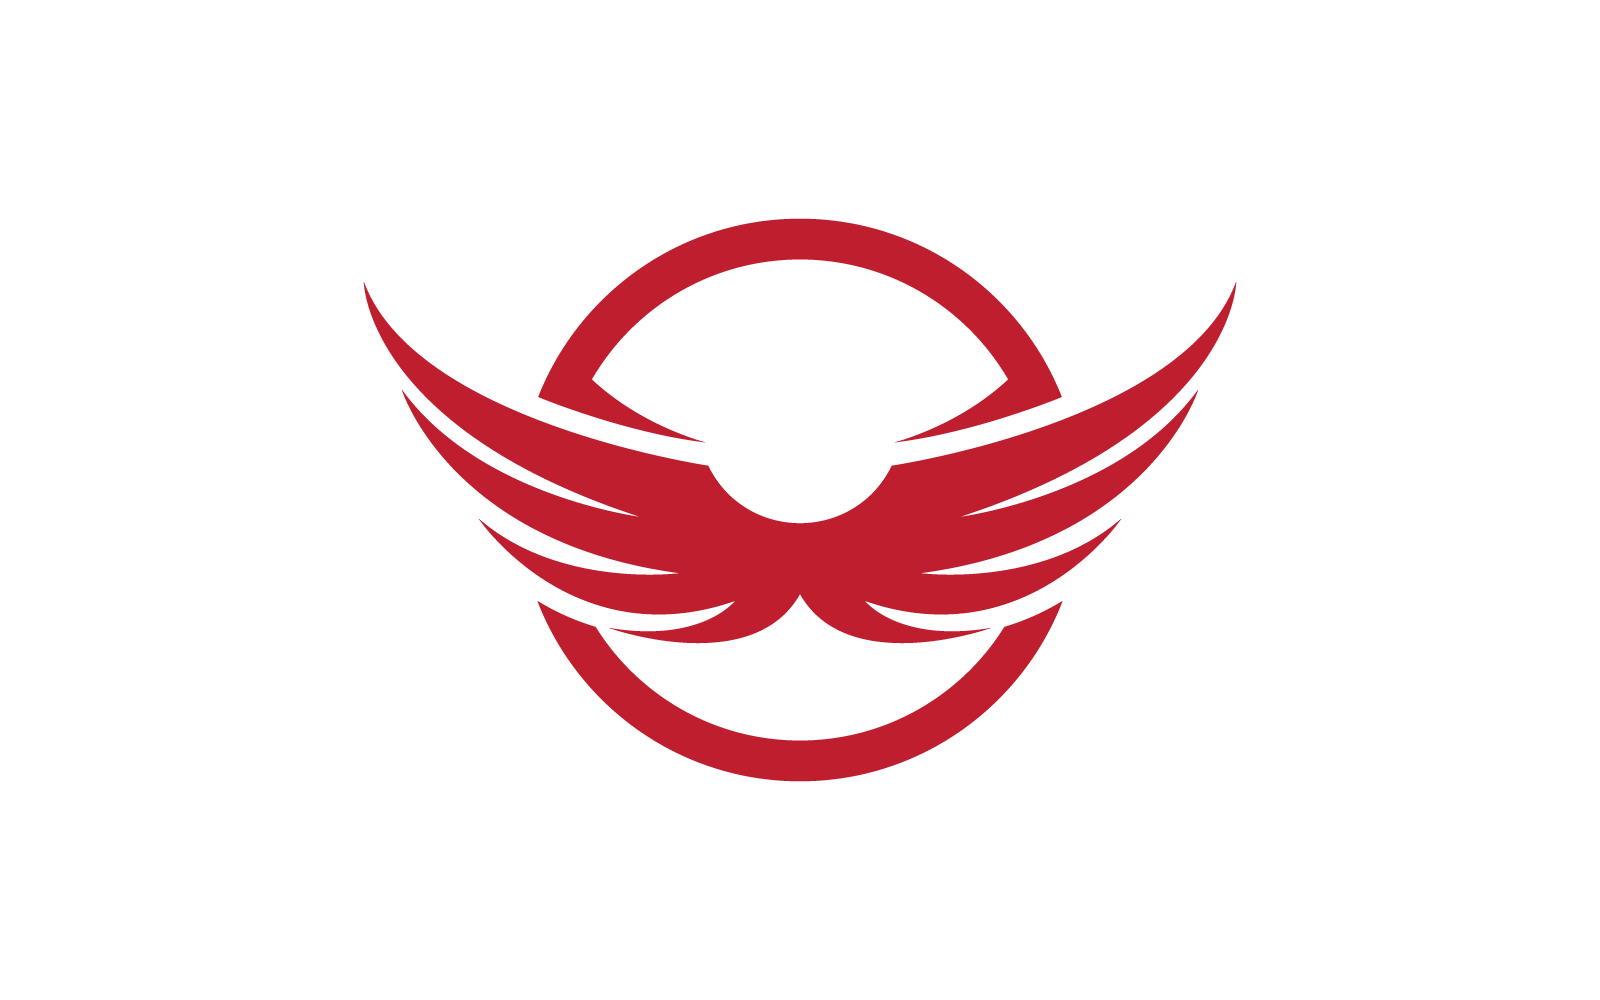 Modèle vectoriel de logo d'illustration d'aile